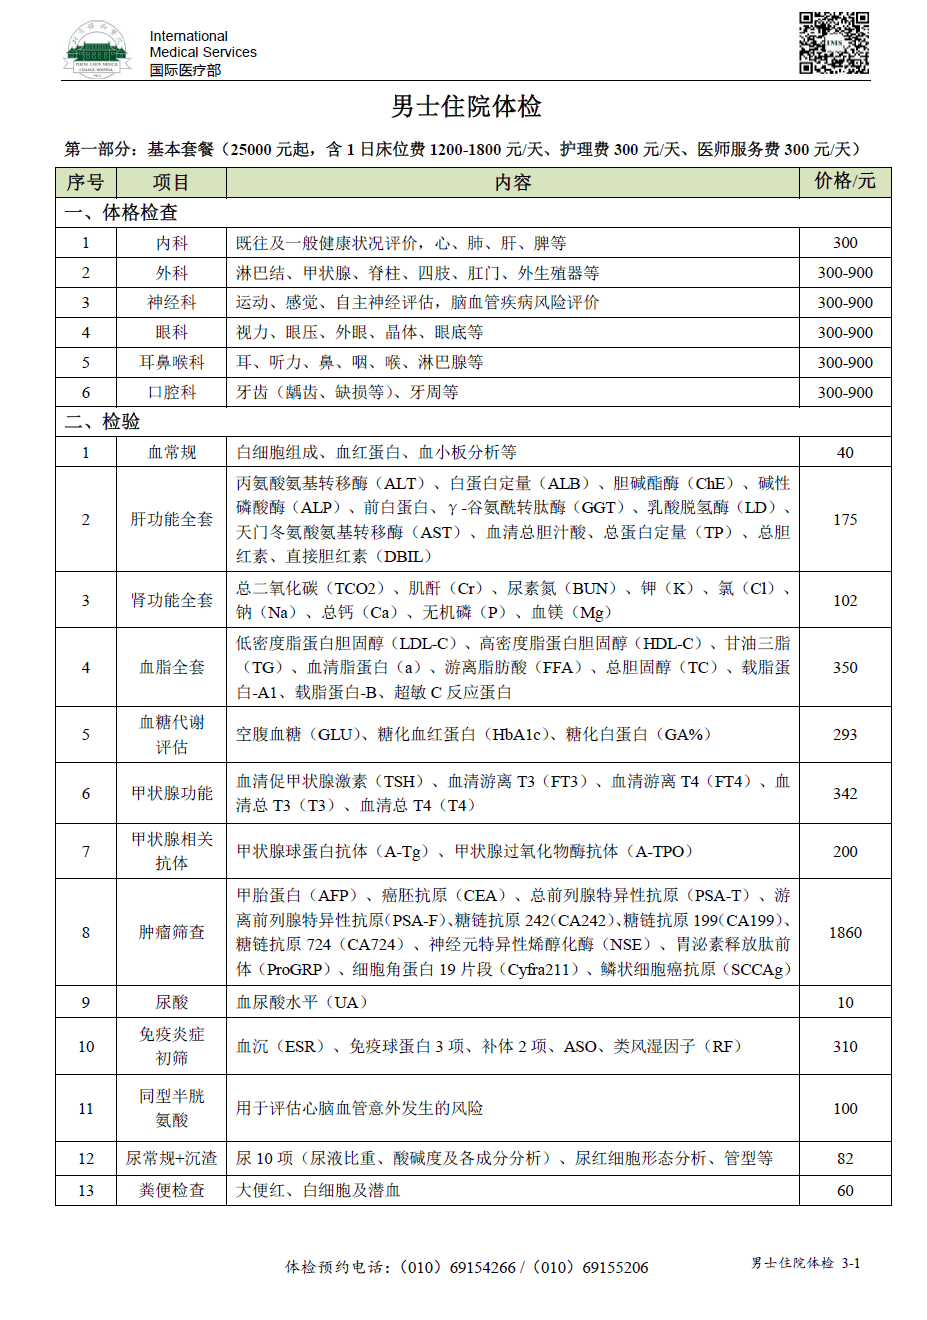 北京协和医院国际医疗部体检项目表